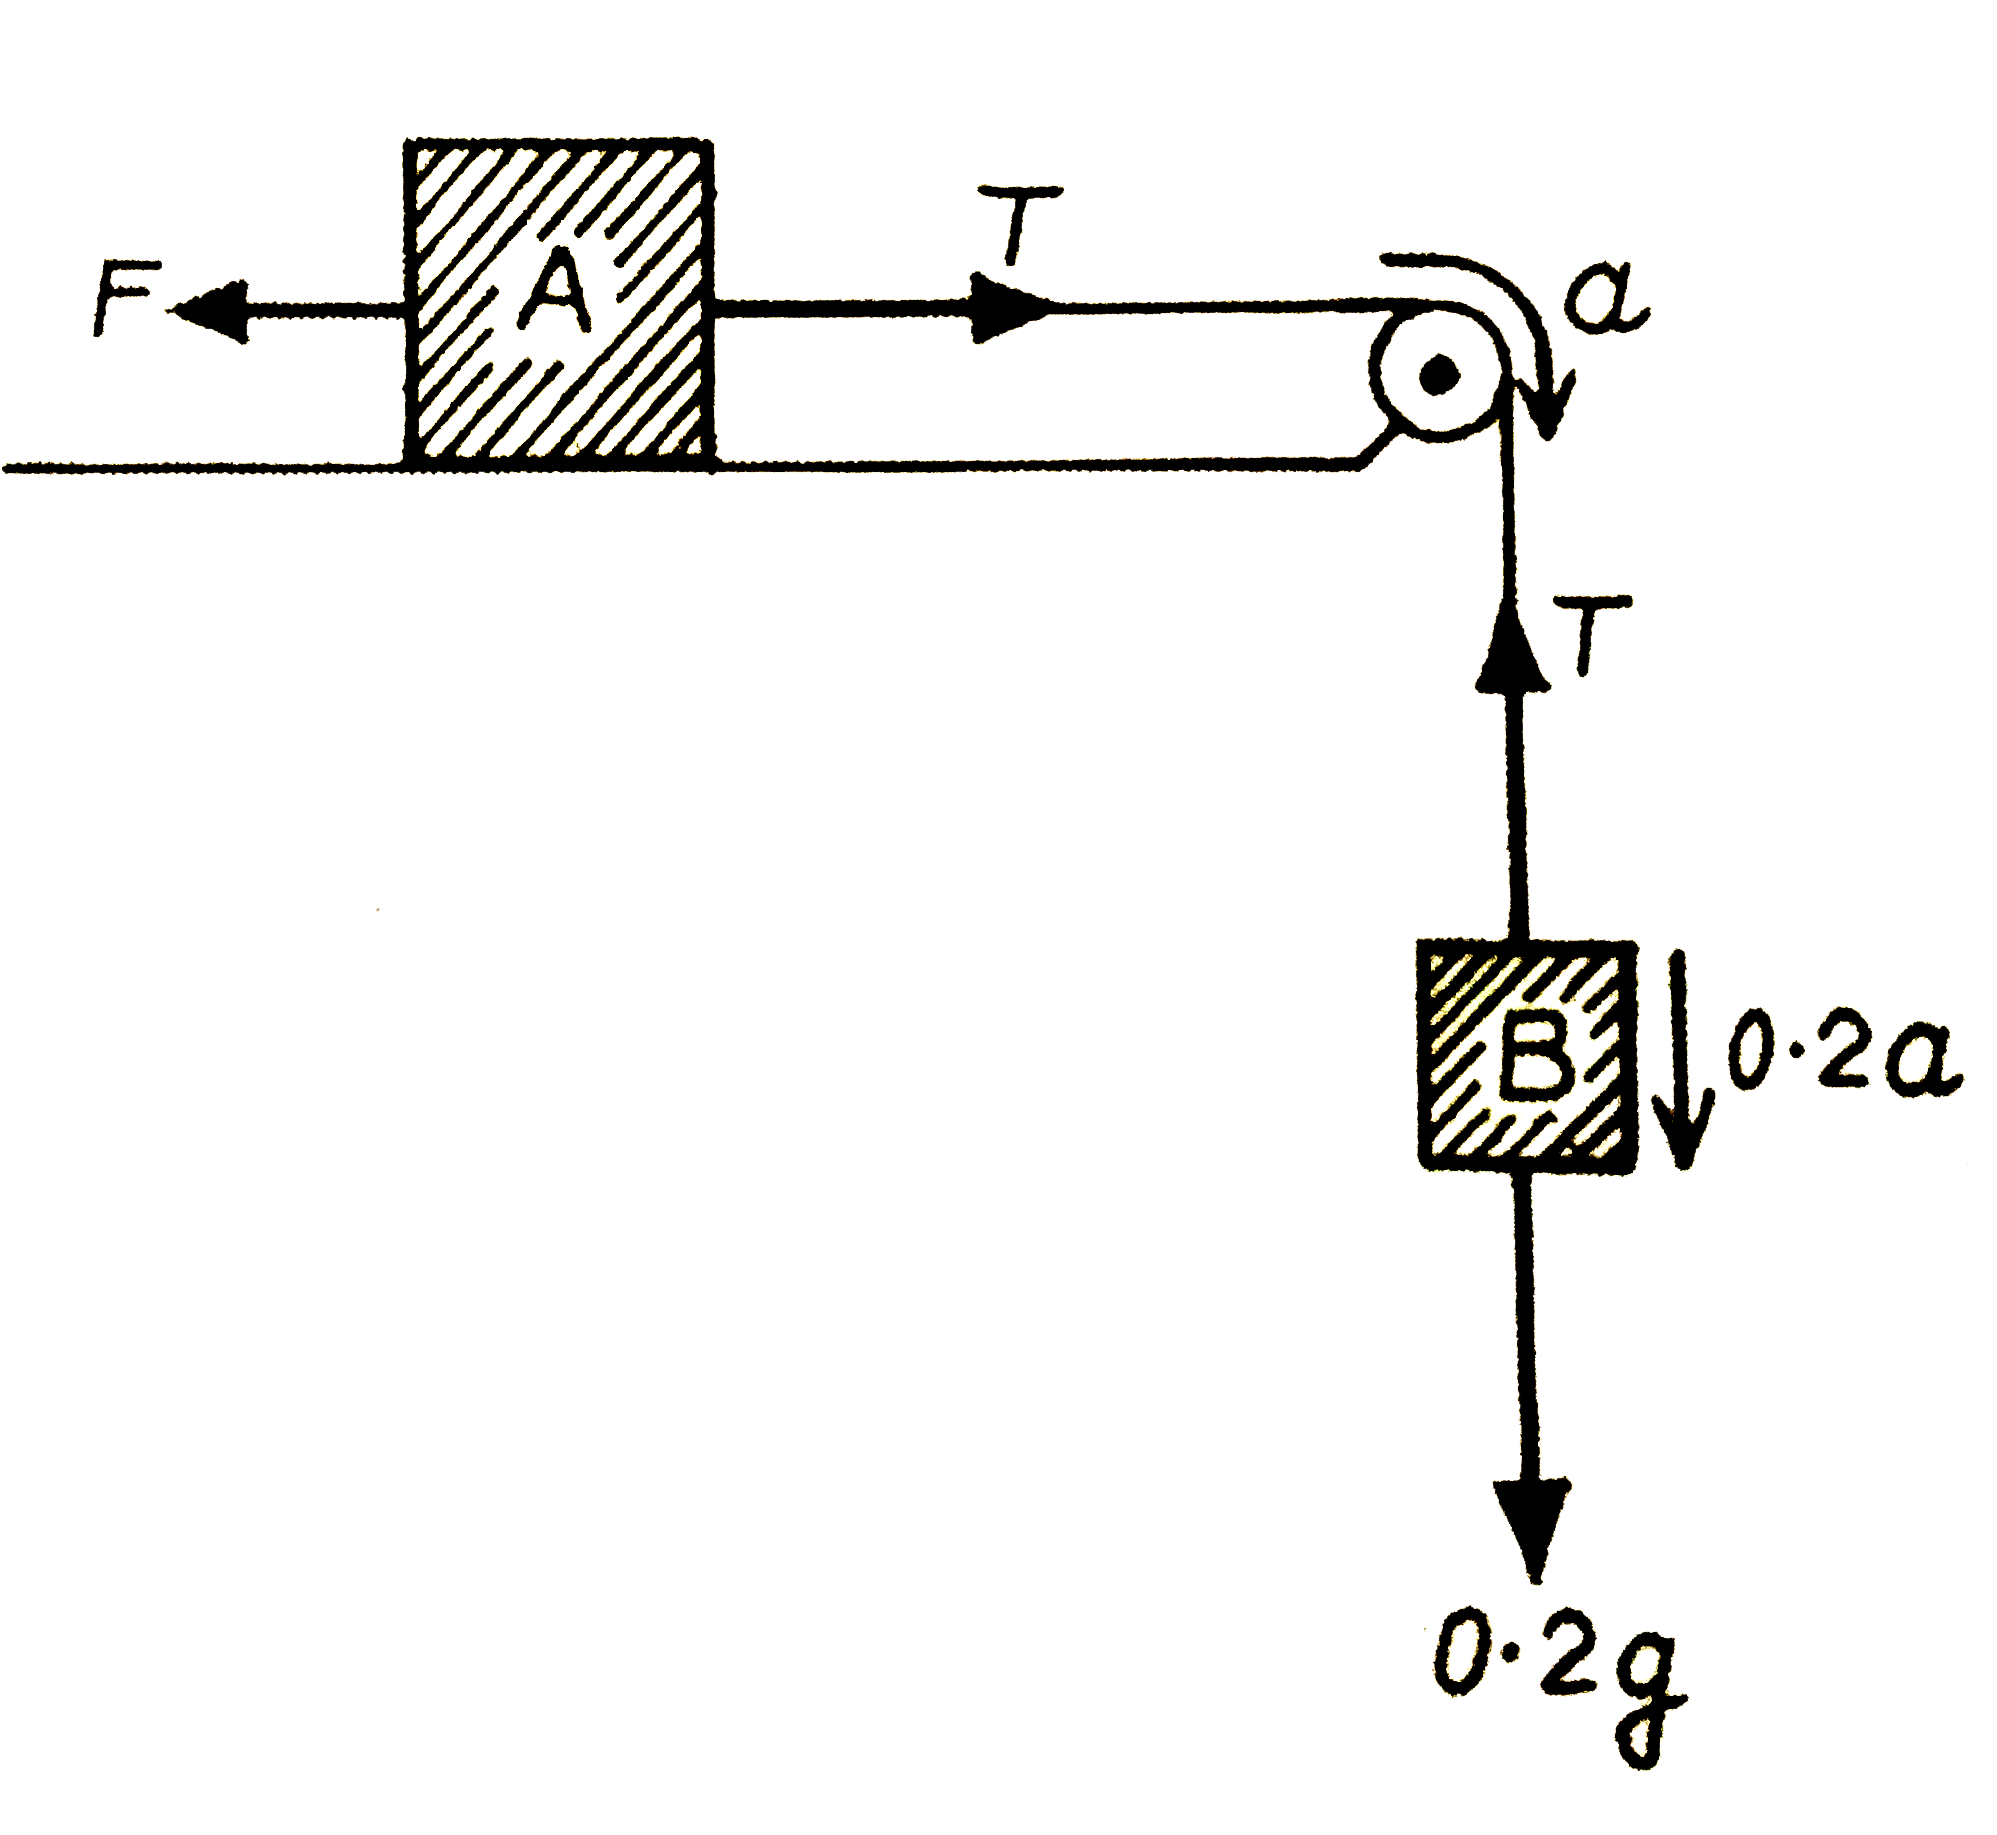 चित्र के अनुसार ब्लॉक A पर एक नियत बल F=0.1 किग्रा भार का लगाया गया है। पुली तथा डोरी नगण्य भार की है तथा मेज की सतह चिकनी है। ब्लॉक A का त्वरण ज्ञात कीजिए। प्रत्येक ब्लॉक का द्रव्यमान 0.2 किग्रा है।